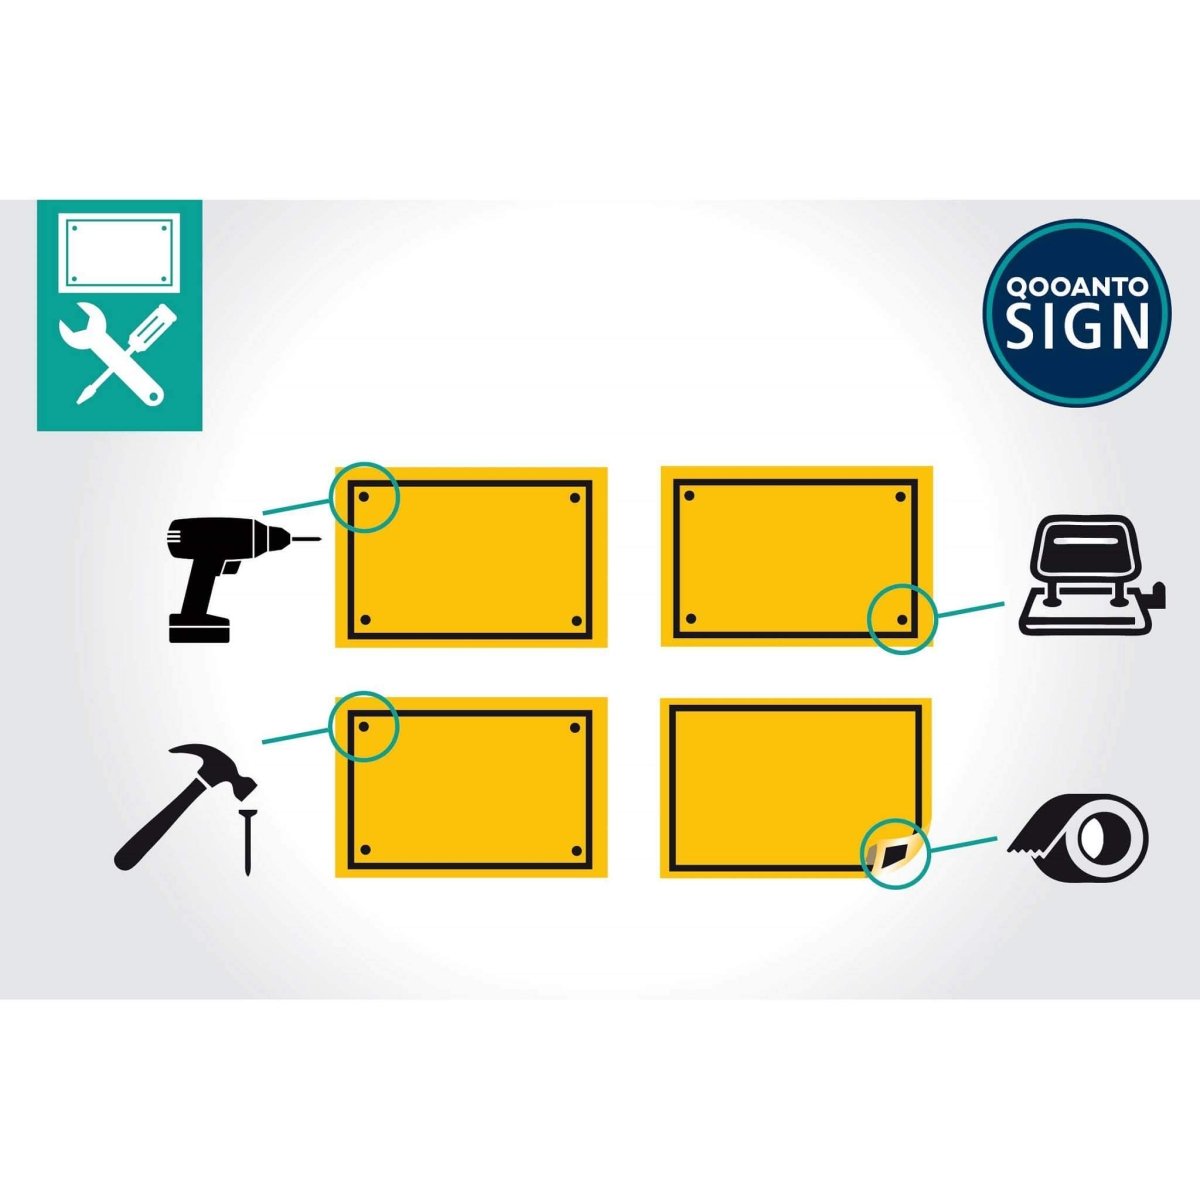 Privatgelände Parkieren Nur Für Kunden Schild aus Alu-Verbund mit UV-Schutz - QOOANTO-SIGN